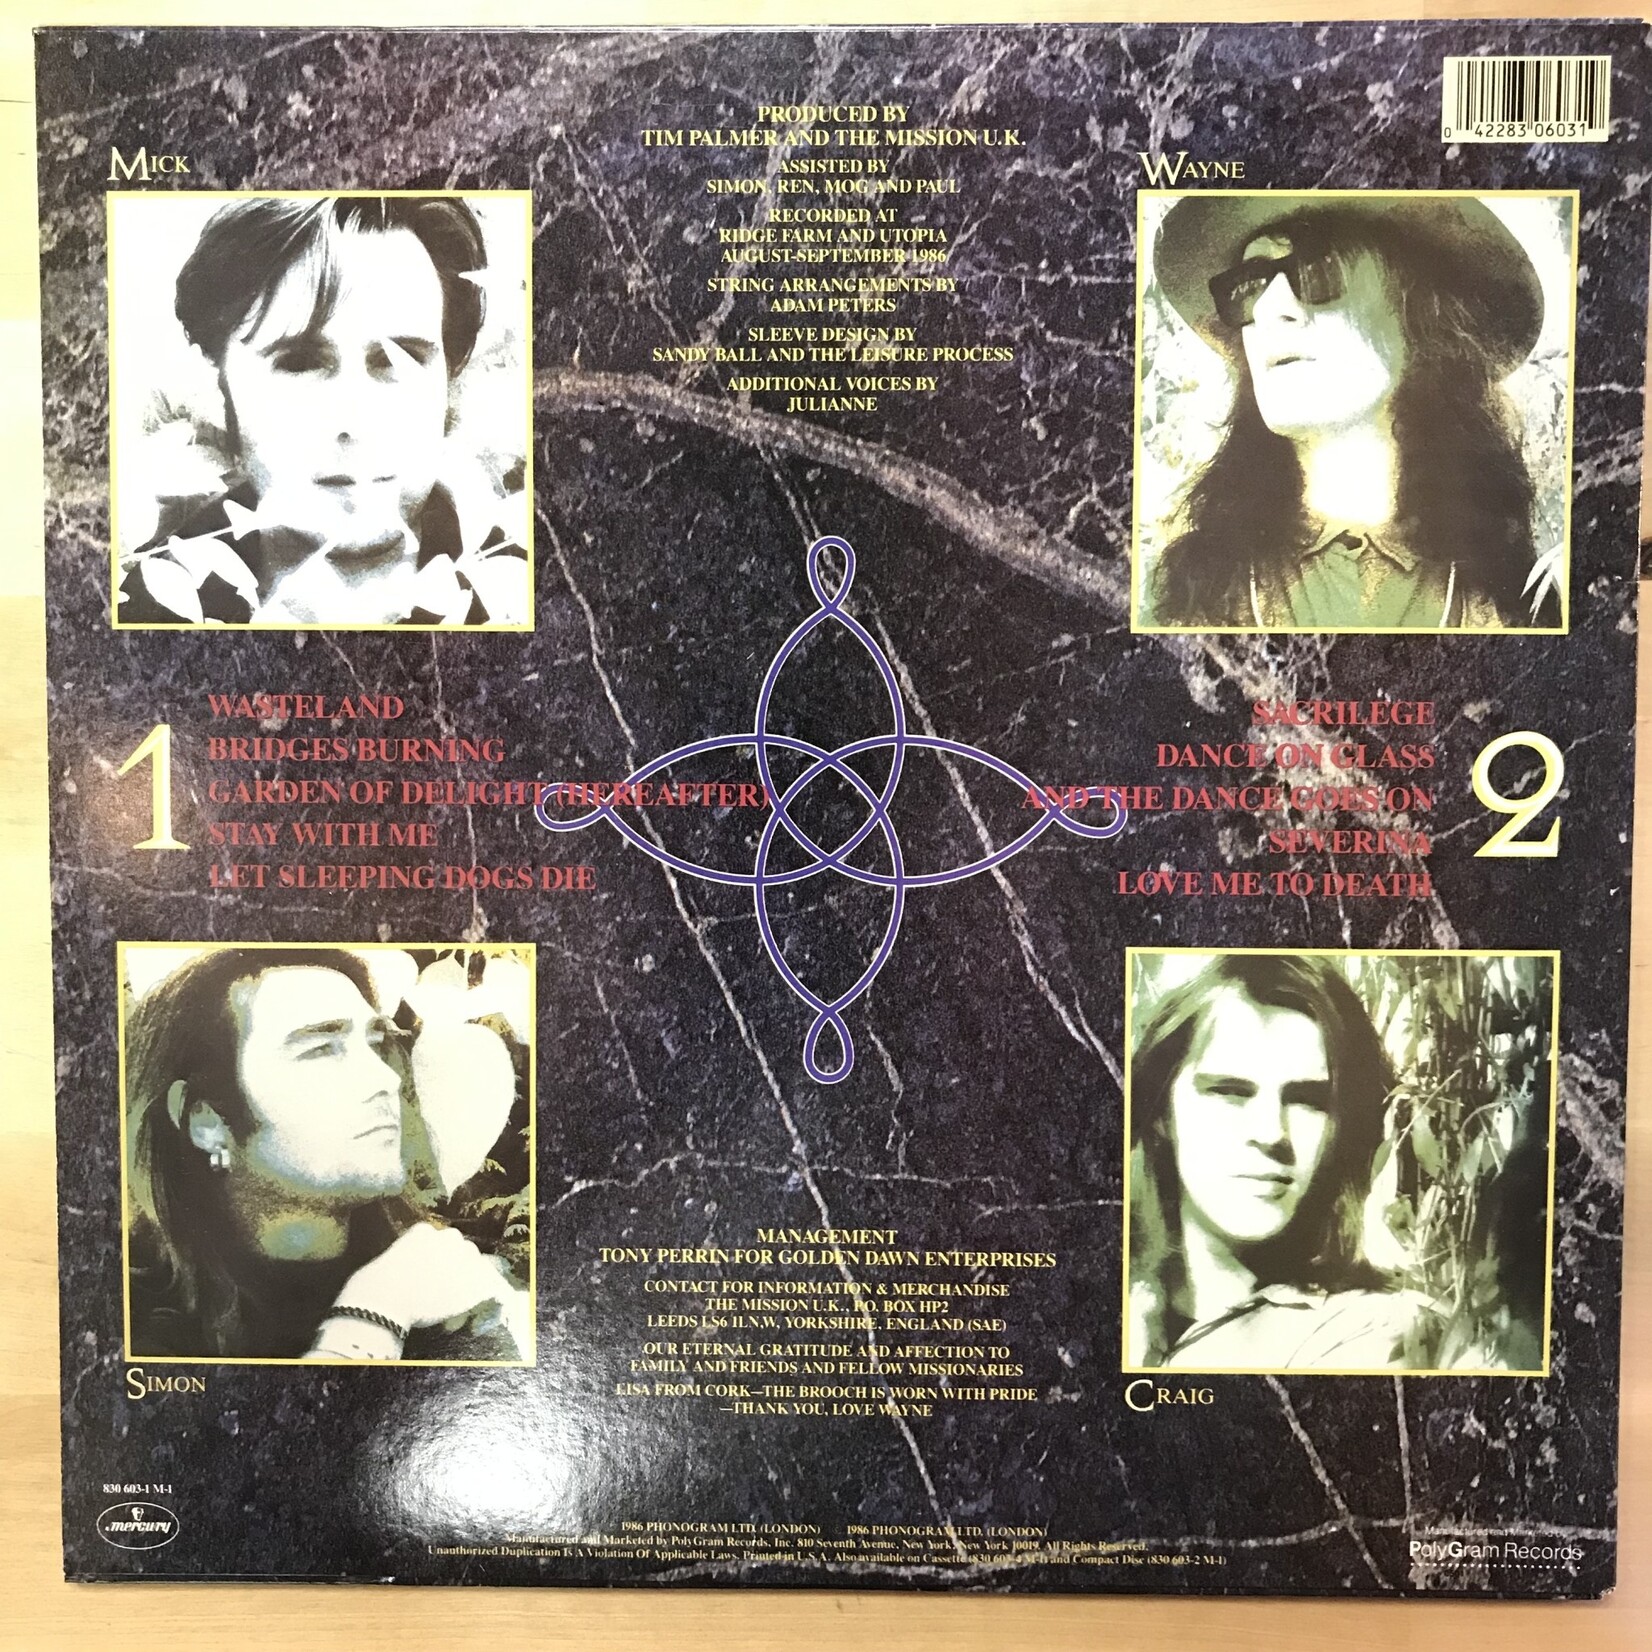 Mission U.K. - God’s Own Medicine - 422 830 603 - Vinyl LP (USED)